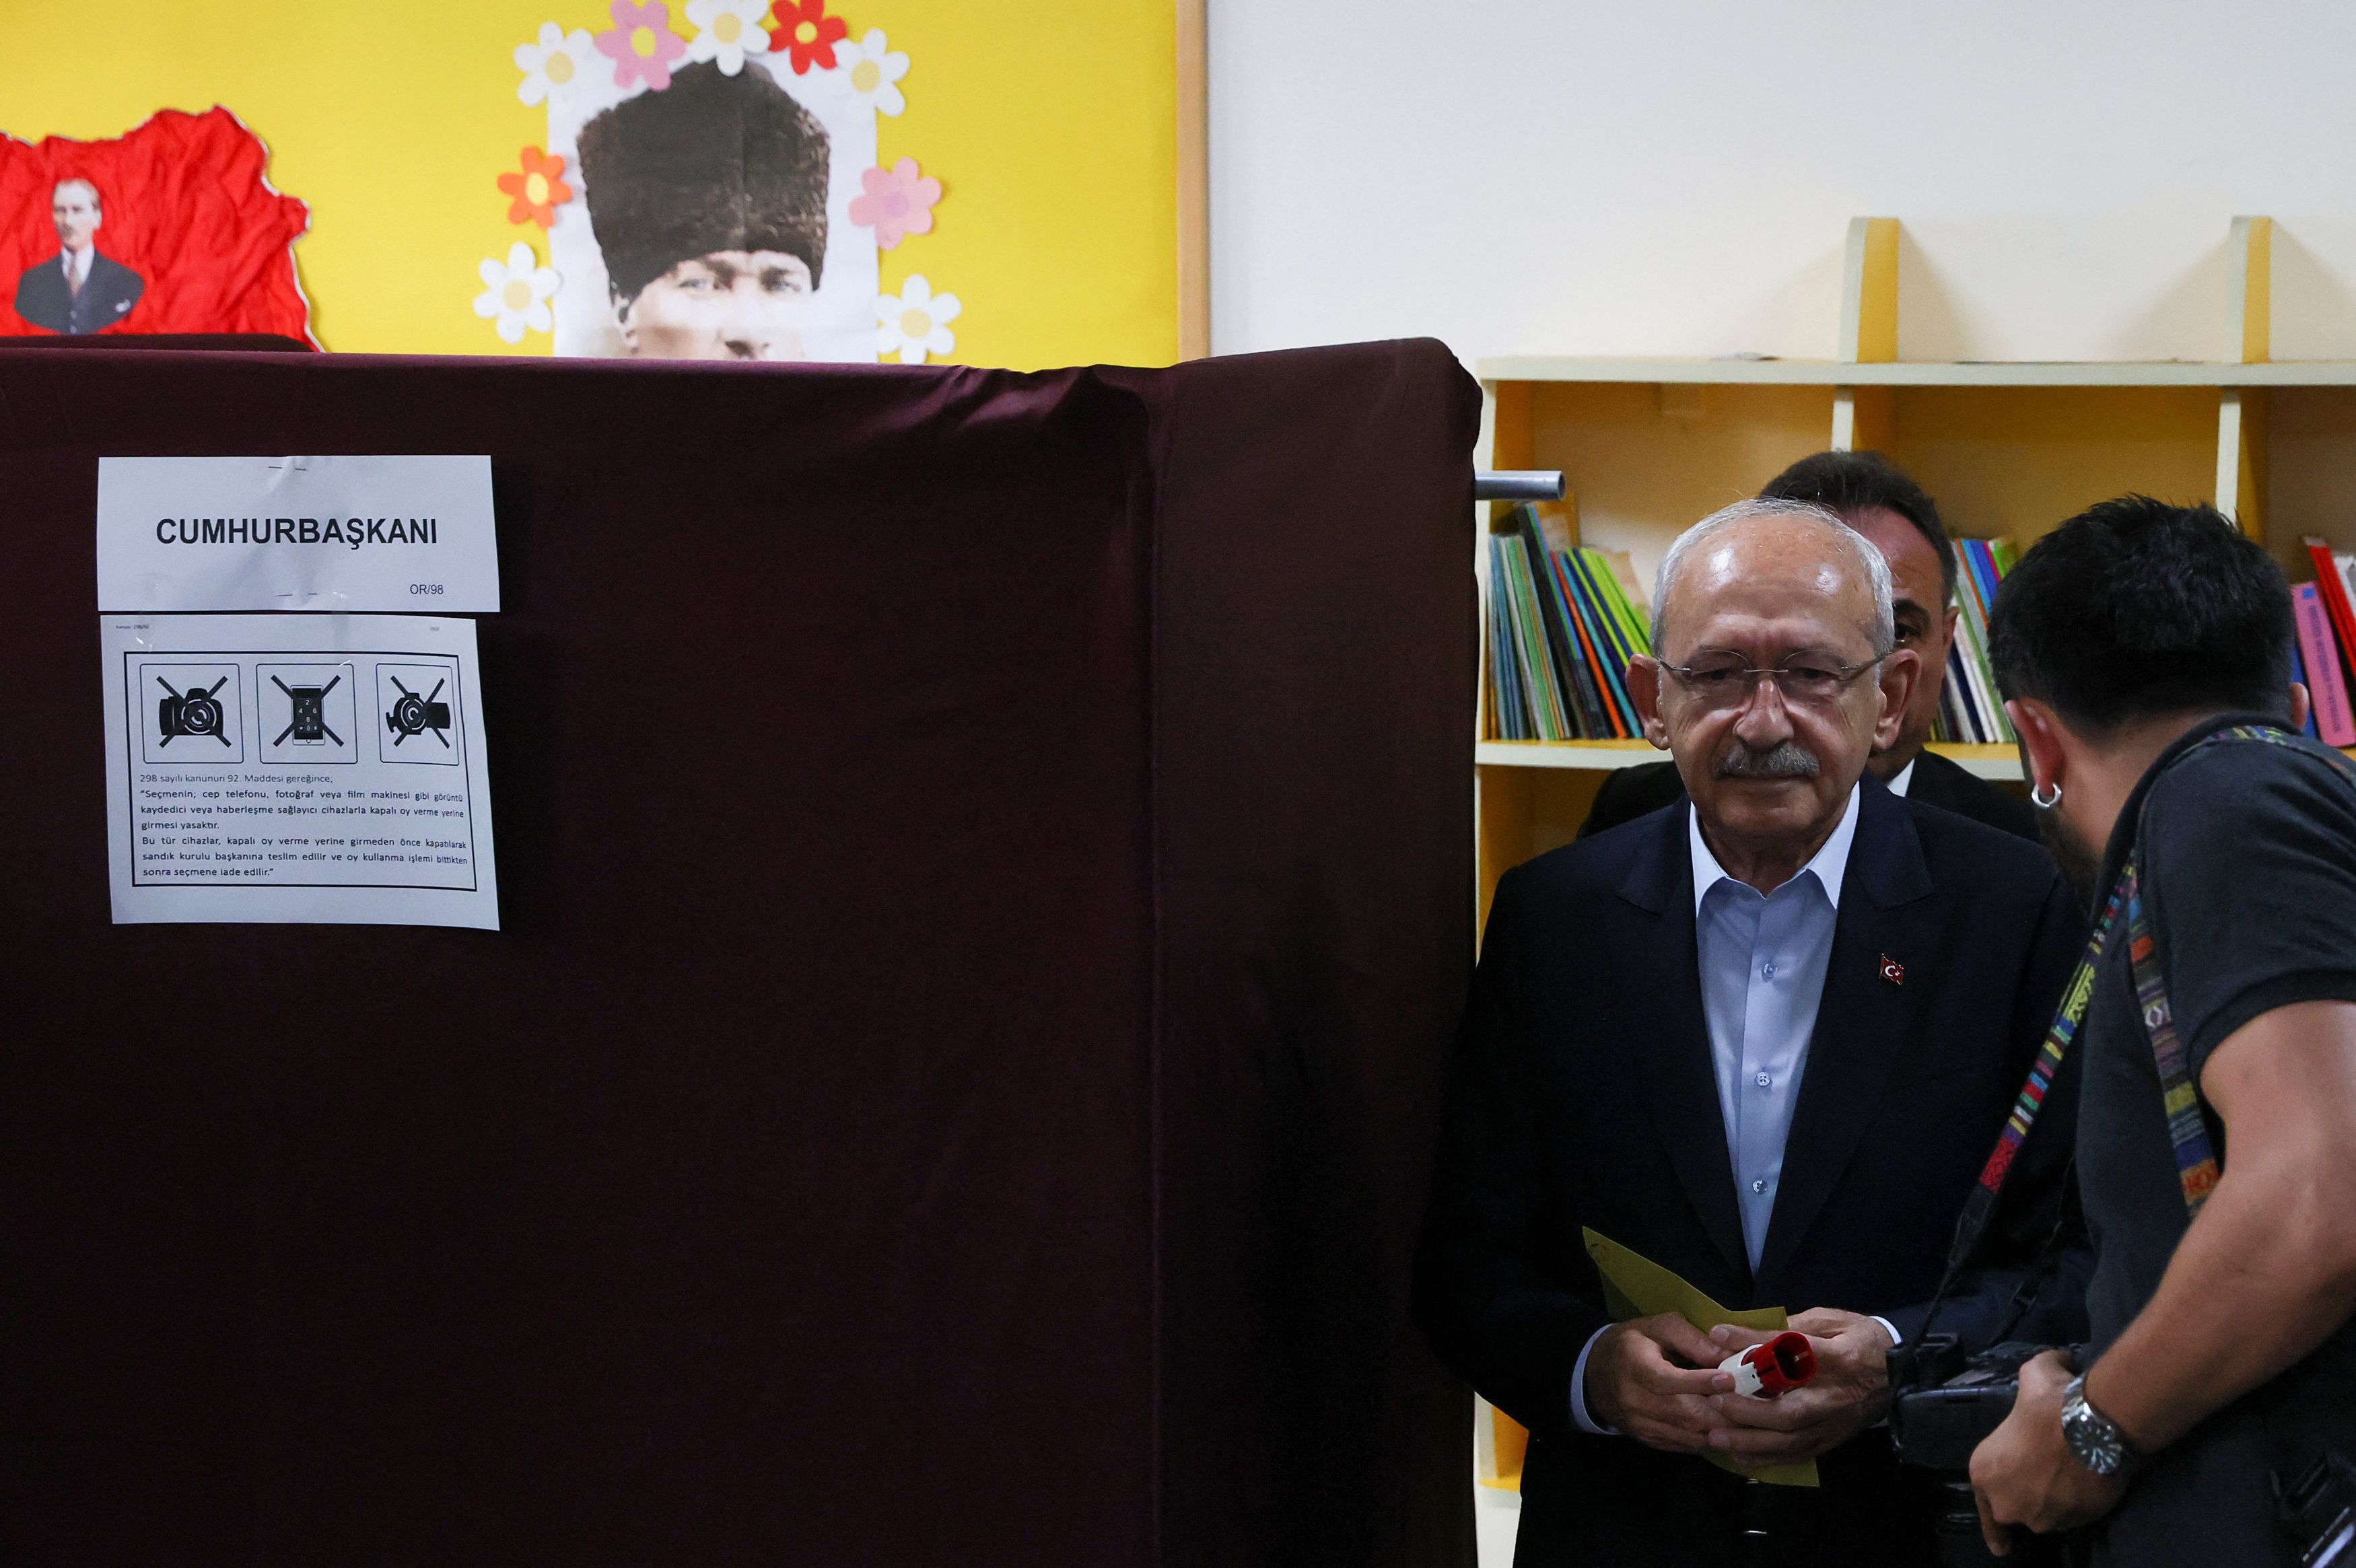 Εκλογές στην Τουρκία: Μπούκαρε με όπλο σε εκλογικό κέντρο και «σημάδεψε» τον Κιλιτσντάρογλου